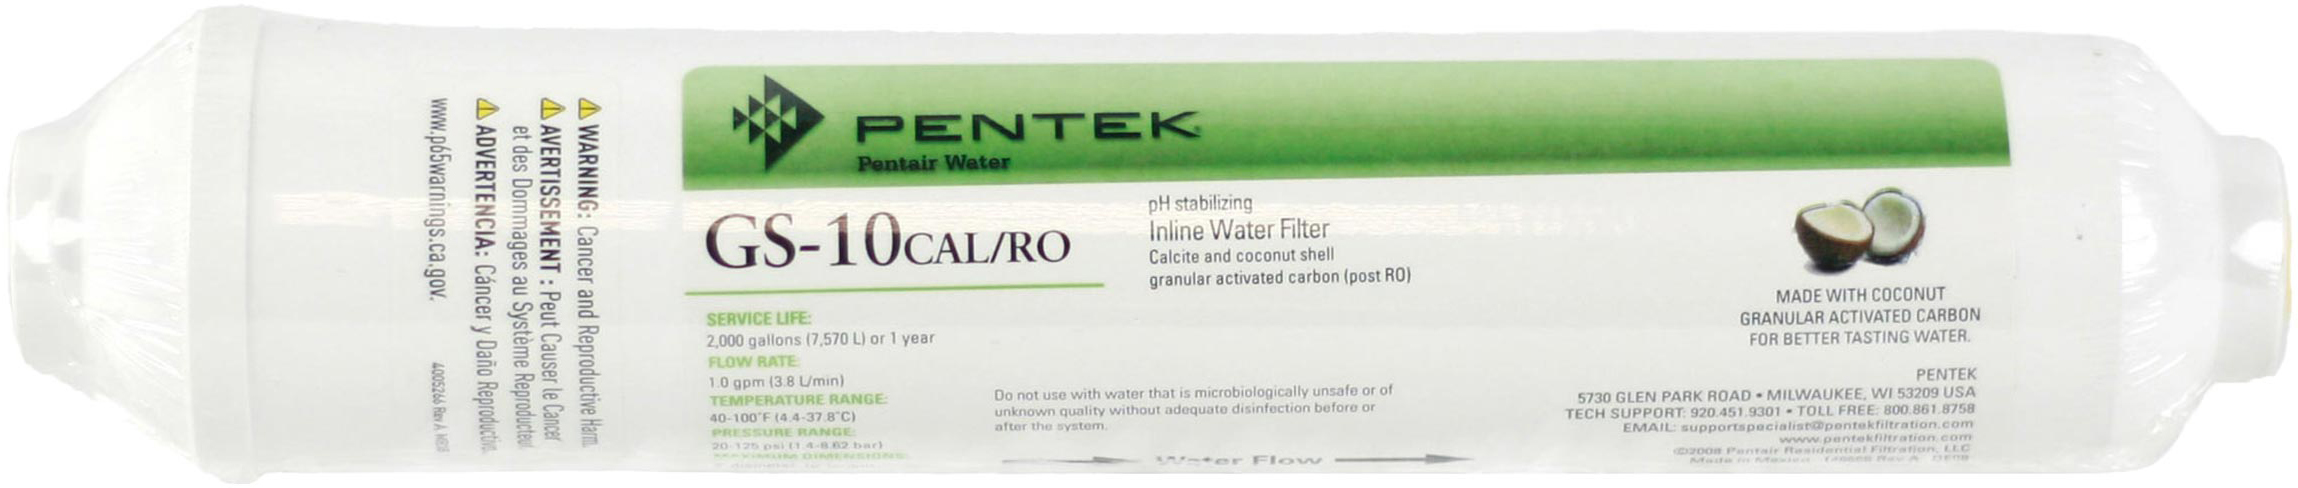 Картридж Pentek для холодной воды Pentek GS-10CALRO (255541-43)